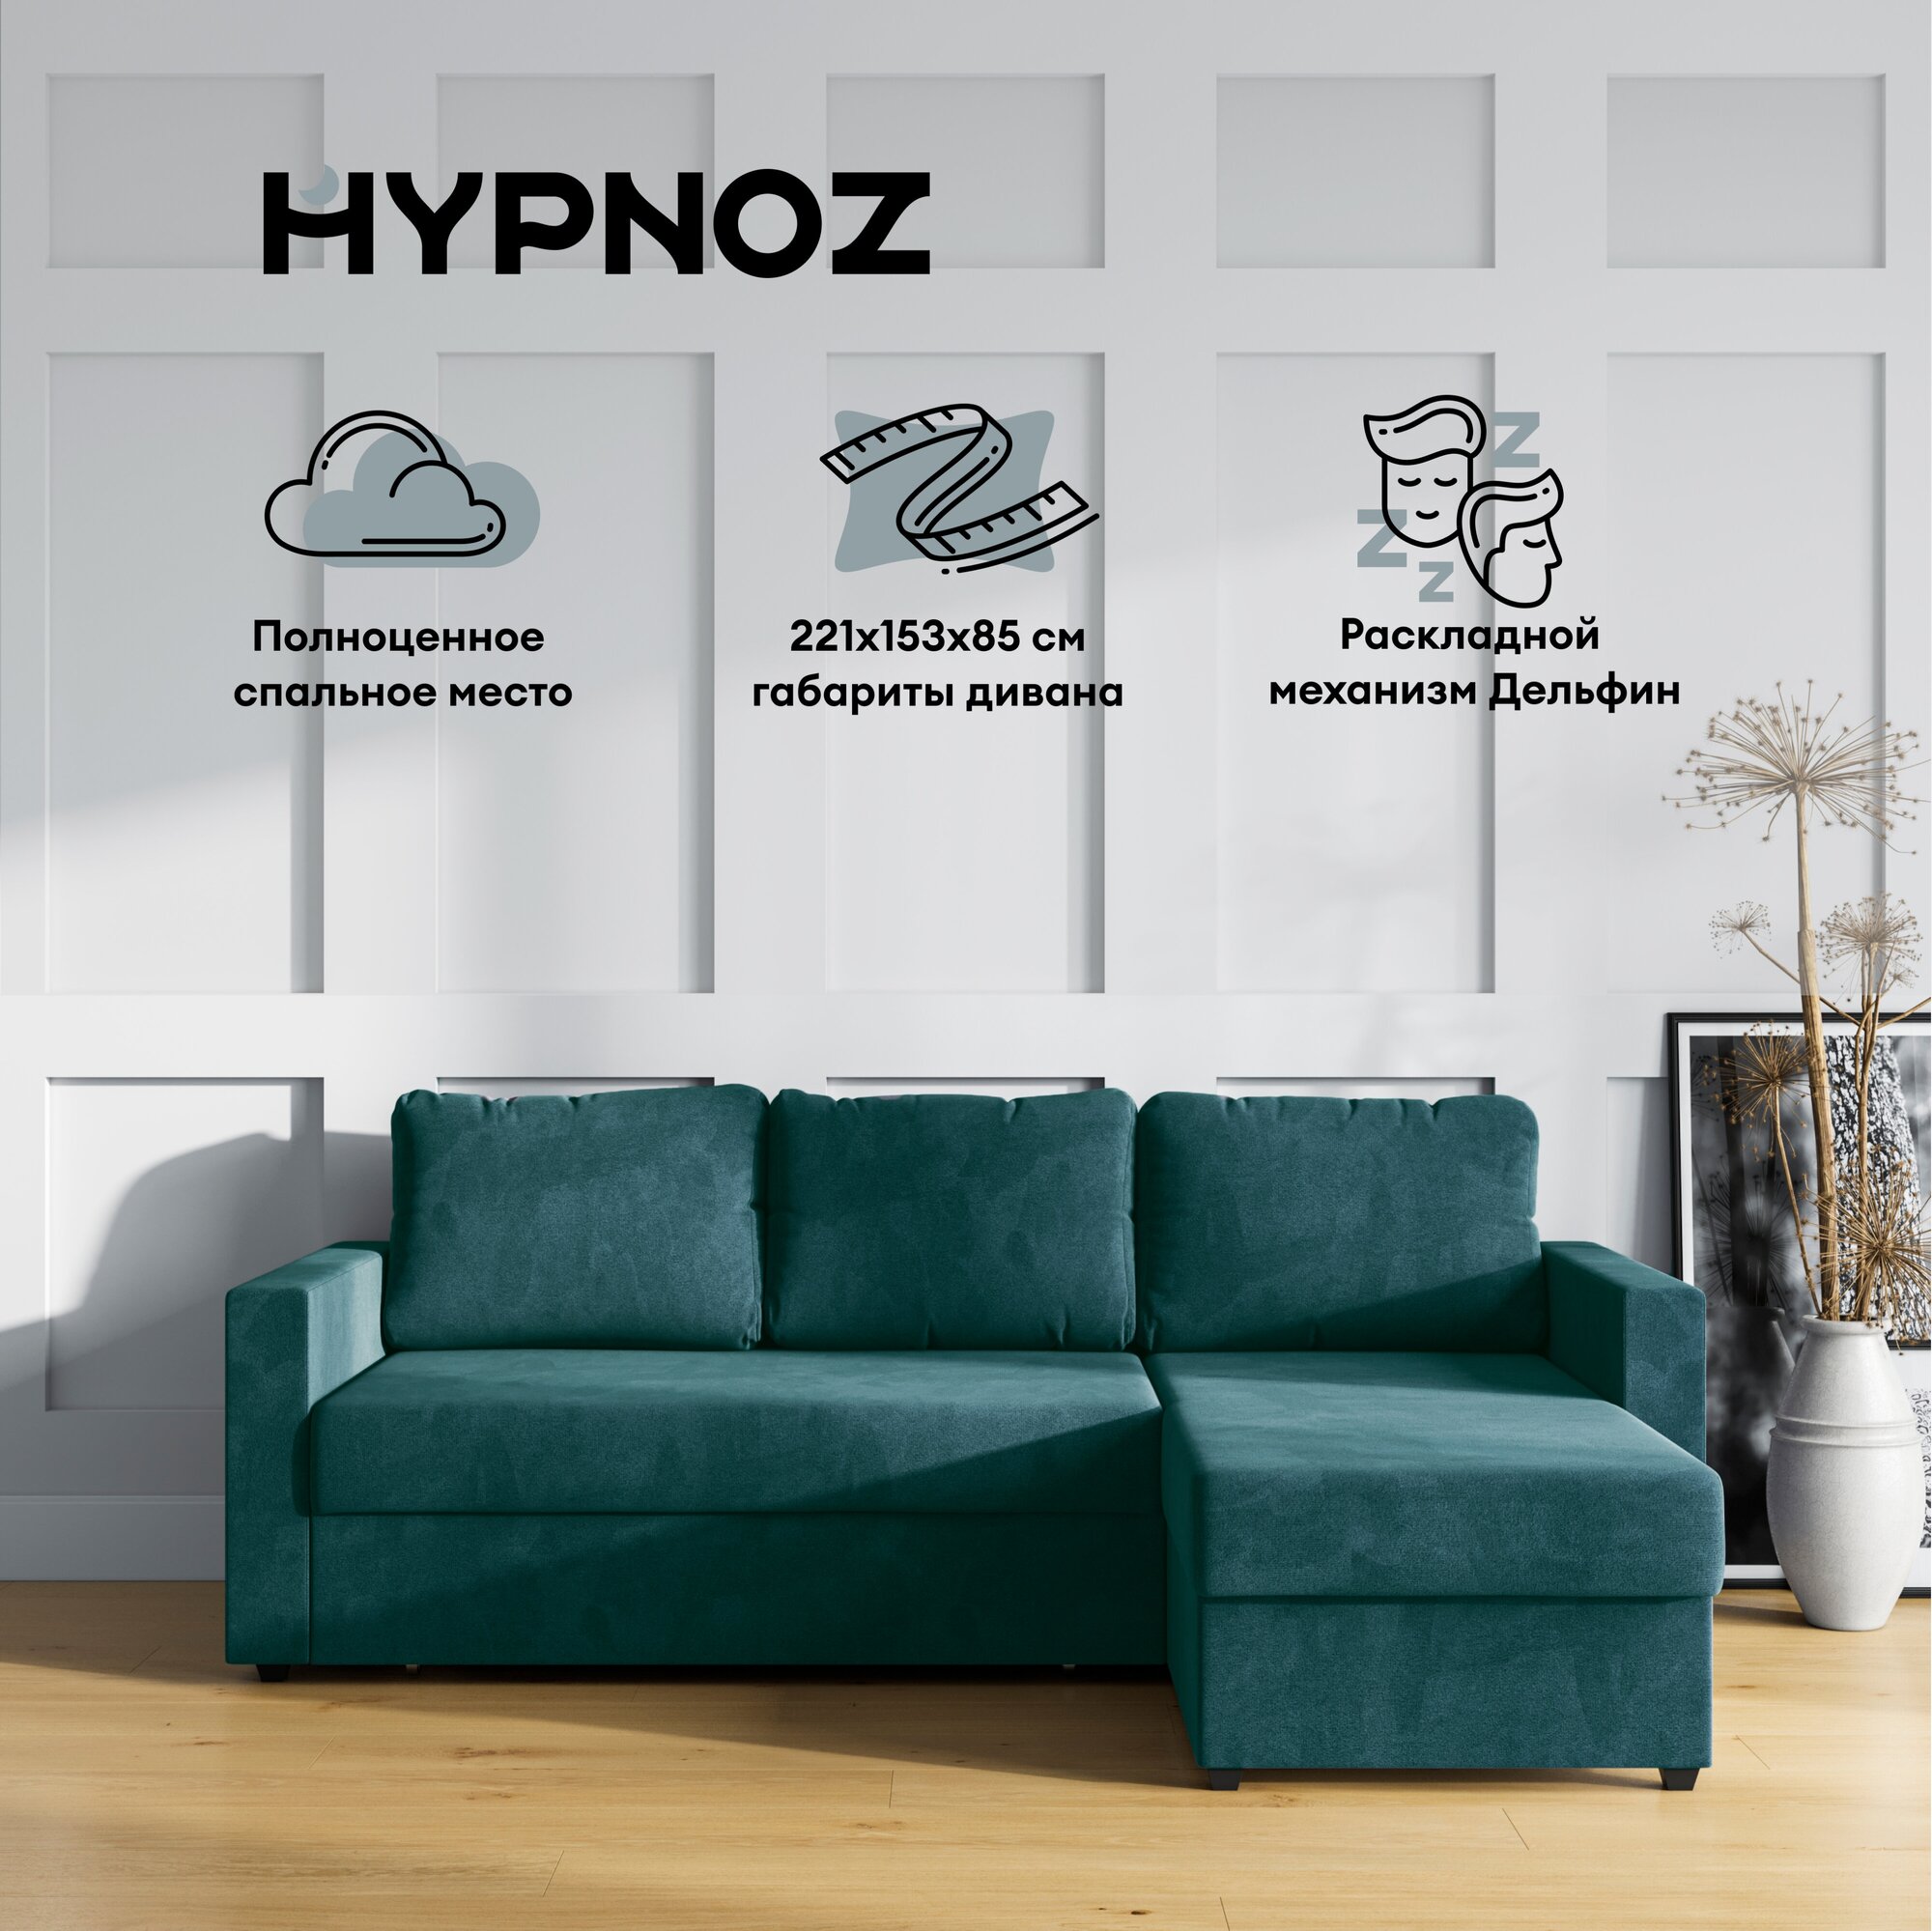 Угловой диван-кровать, HYPNOZ Denver, механизм Дельфин, Зелёный, 221х153х85 см